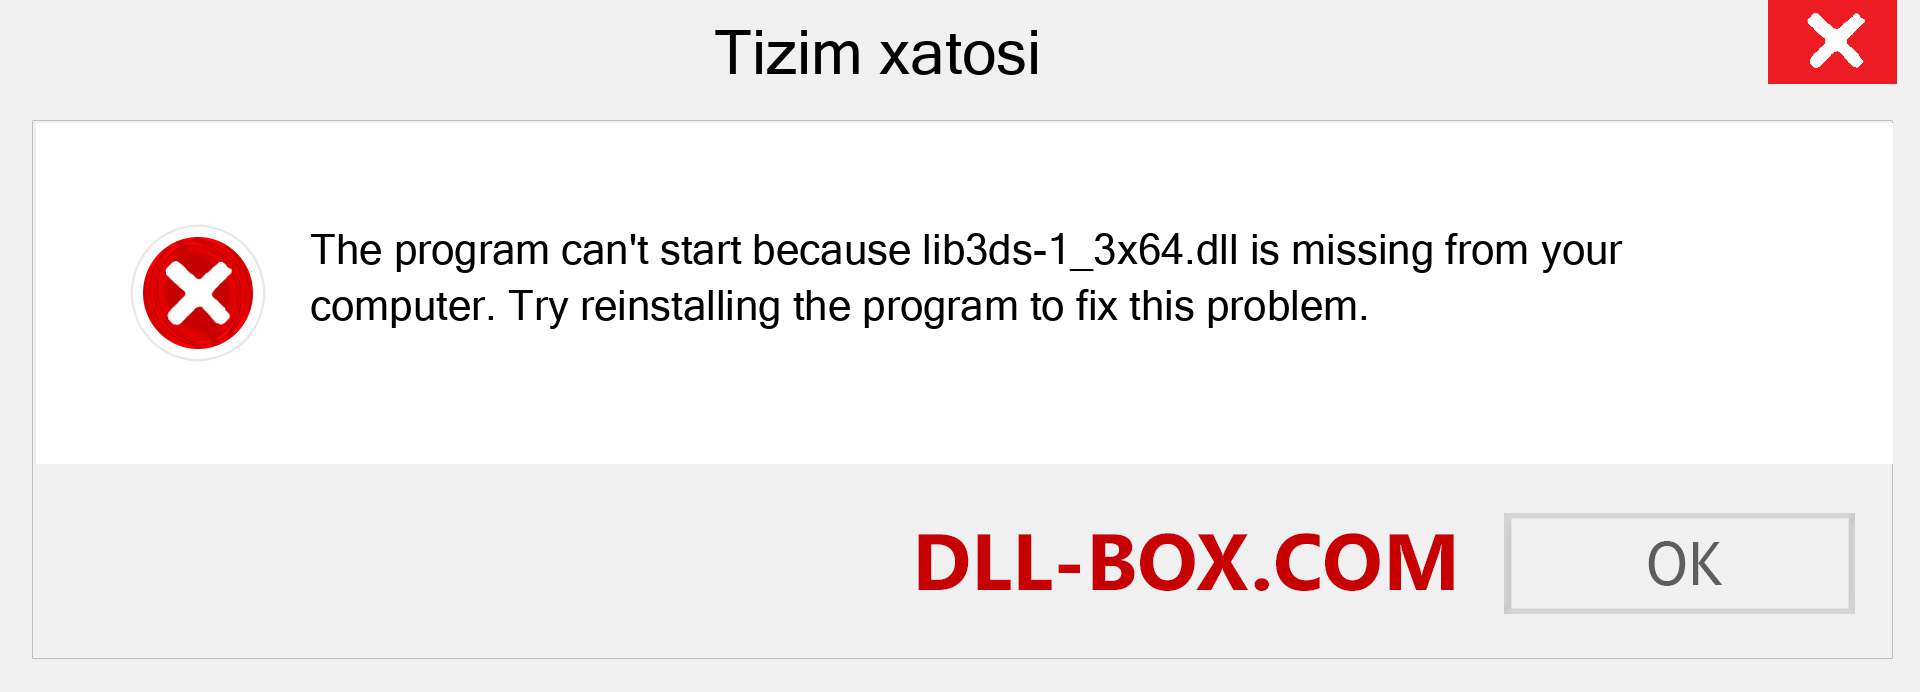 lib3ds-1_3x64.dll fayli yo'qolganmi?. Windows 7, 8, 10 uchun yuklab olish - Windowsda lib3ds-1_3x64 dll etishmayotgan xatoni tuzating, rasmlar, rasmlar